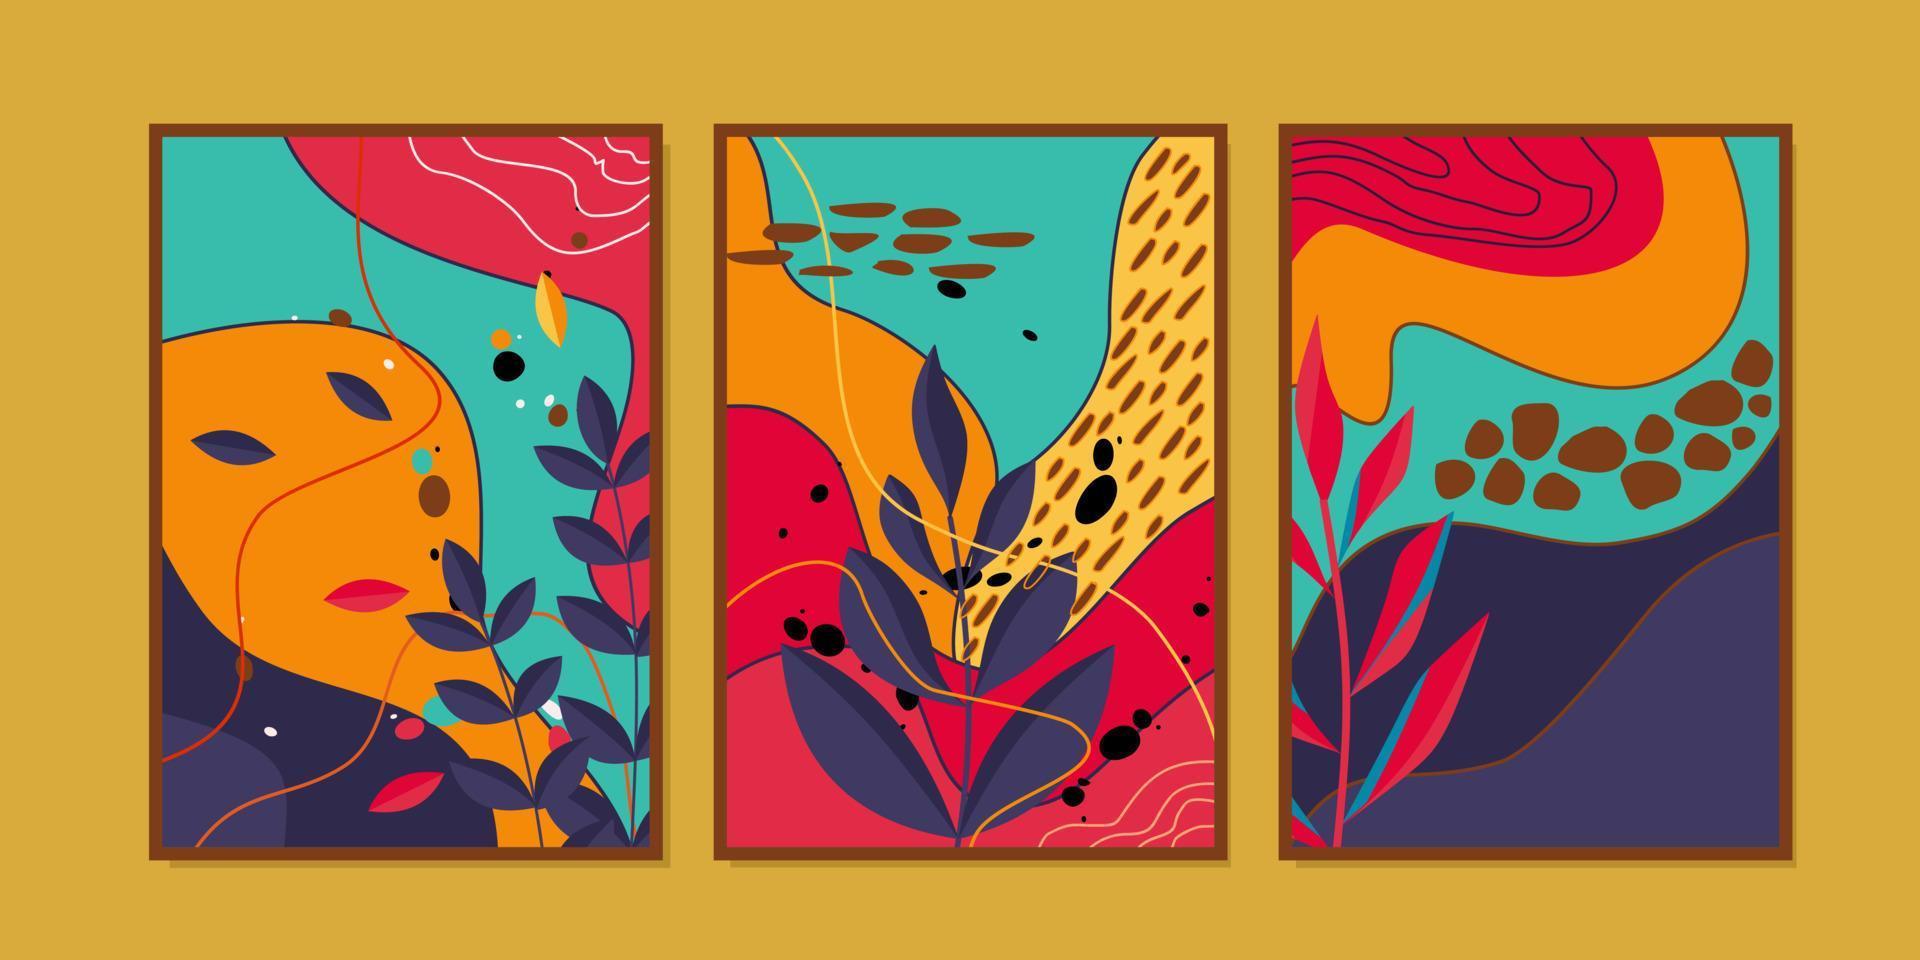 abstrakte botanische Wandkunst-Plakatdrucke. Design für Wanddekoration, Innenausstattung, Drucke, Cover, Katalog vektor